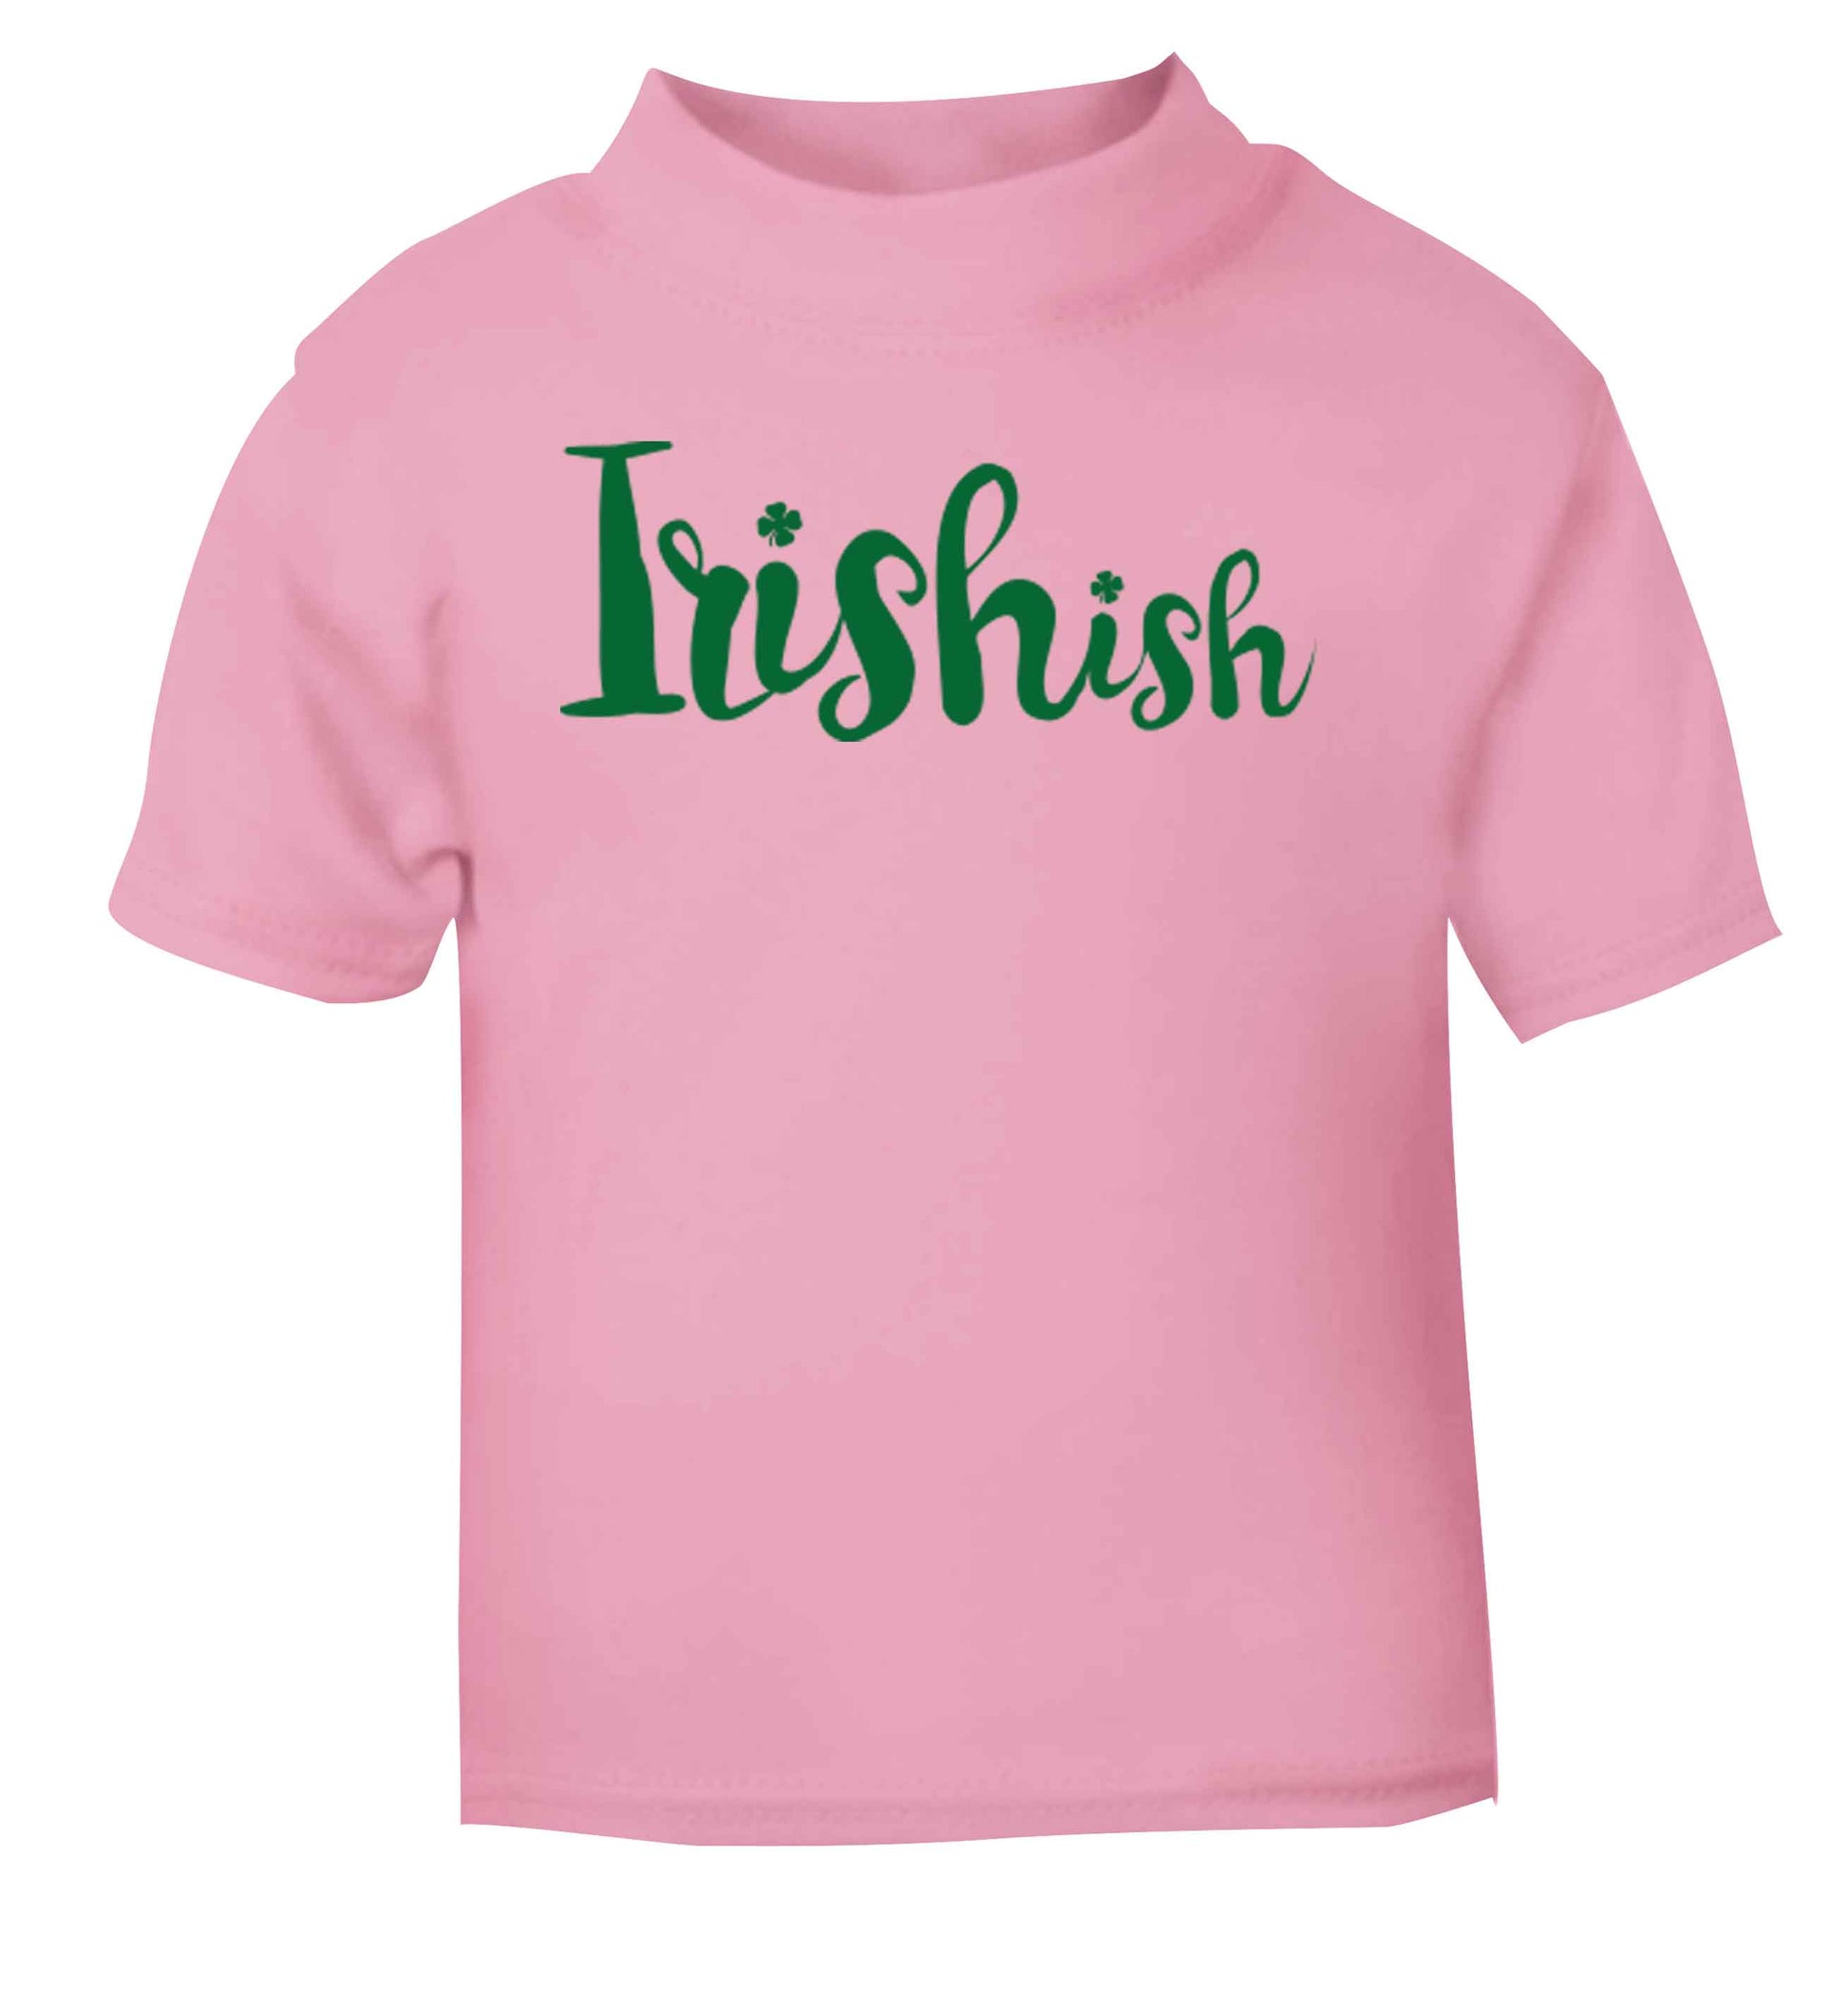 Irishish light pink baby toddler Tshirt 2 Years